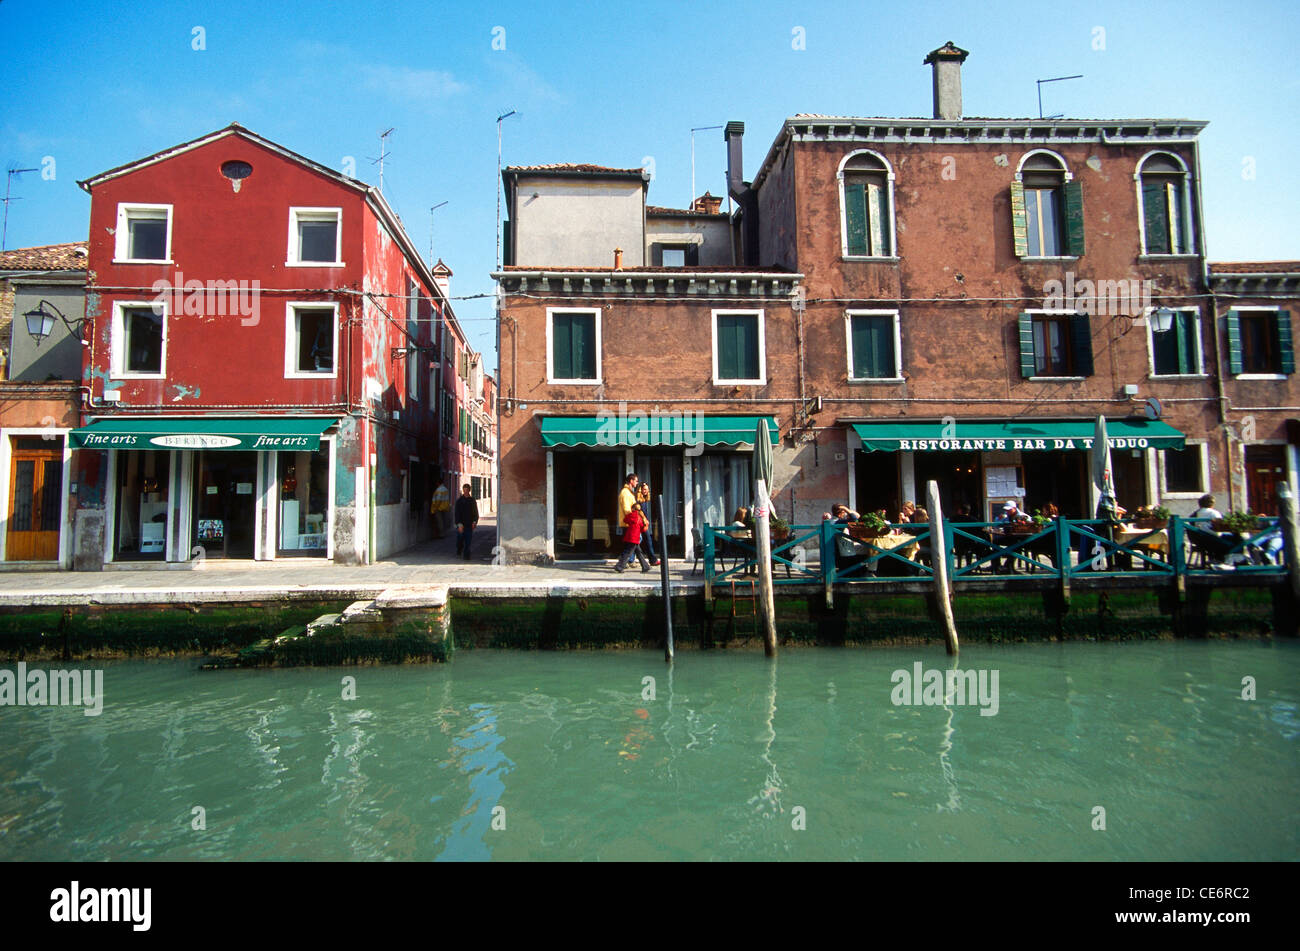 Fine Arts ; Ristorante Bar Da Tanduo ; Morano ; Venice ; Italy ; Europe Stock Photo